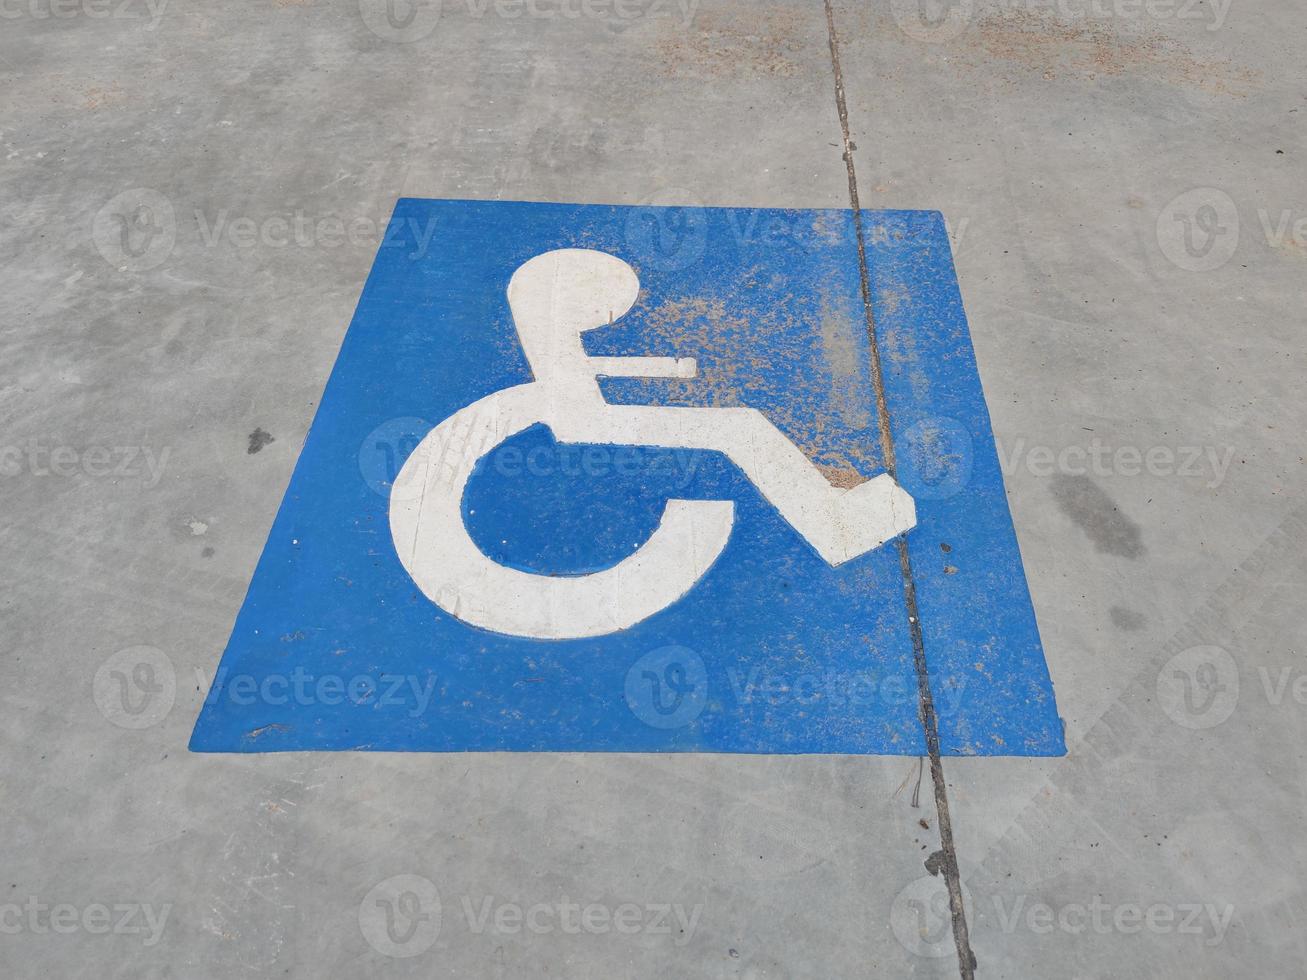 panneau bleu sur l'asphalte sur le stationnement pour personnes handicapées photo